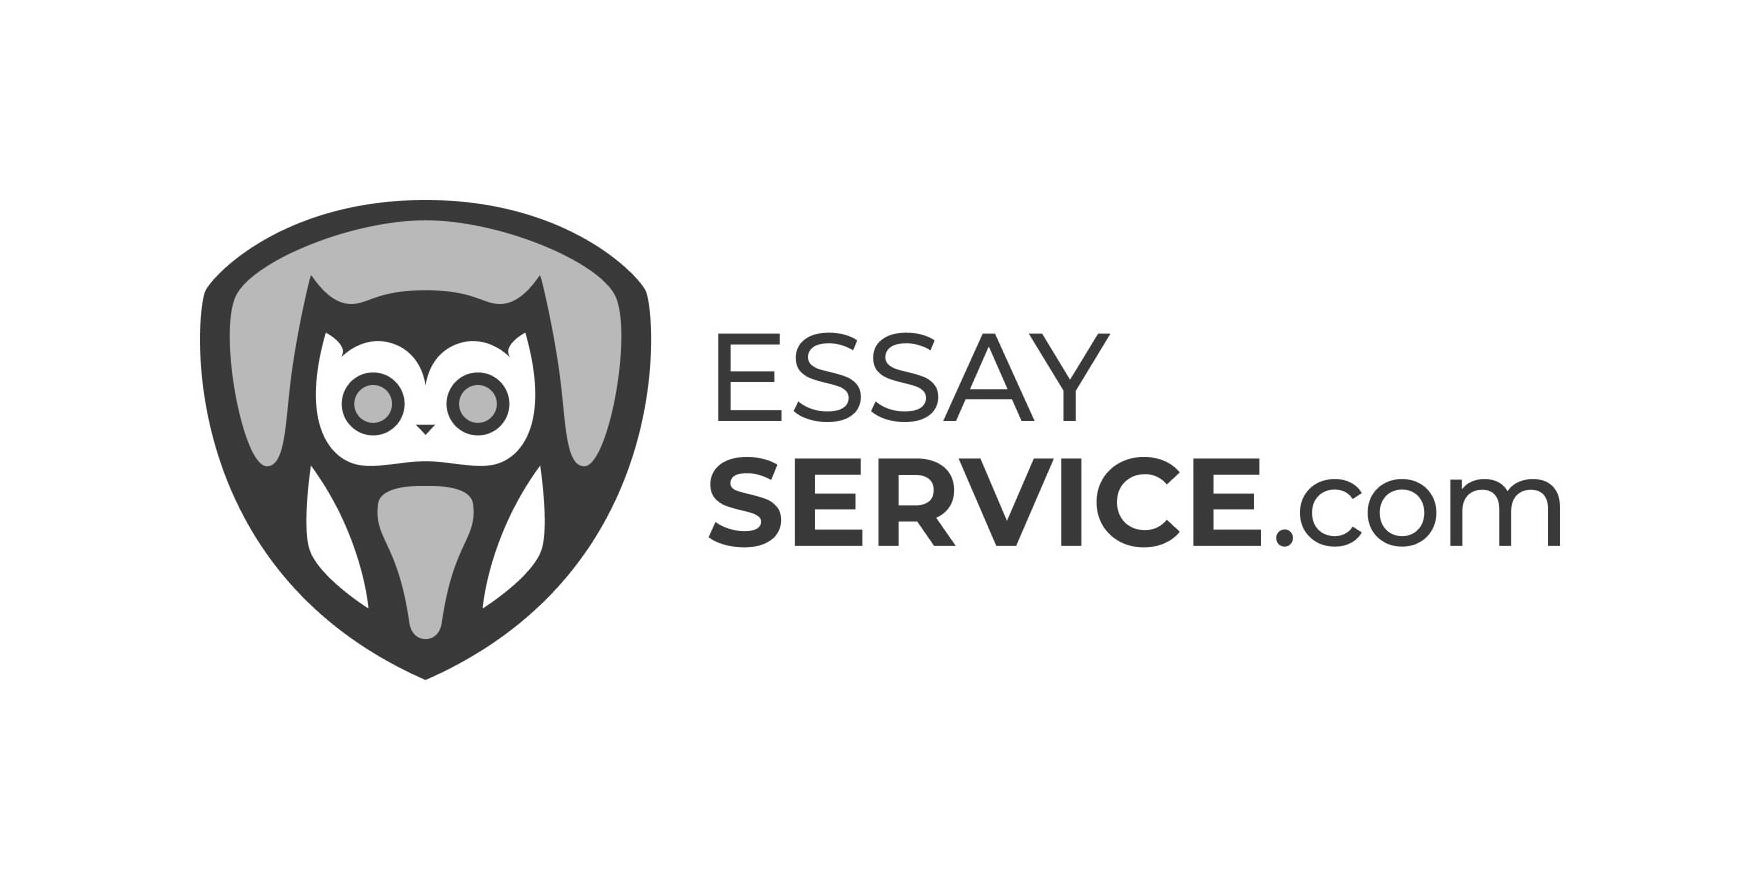  ESSAY SERVICE.COM